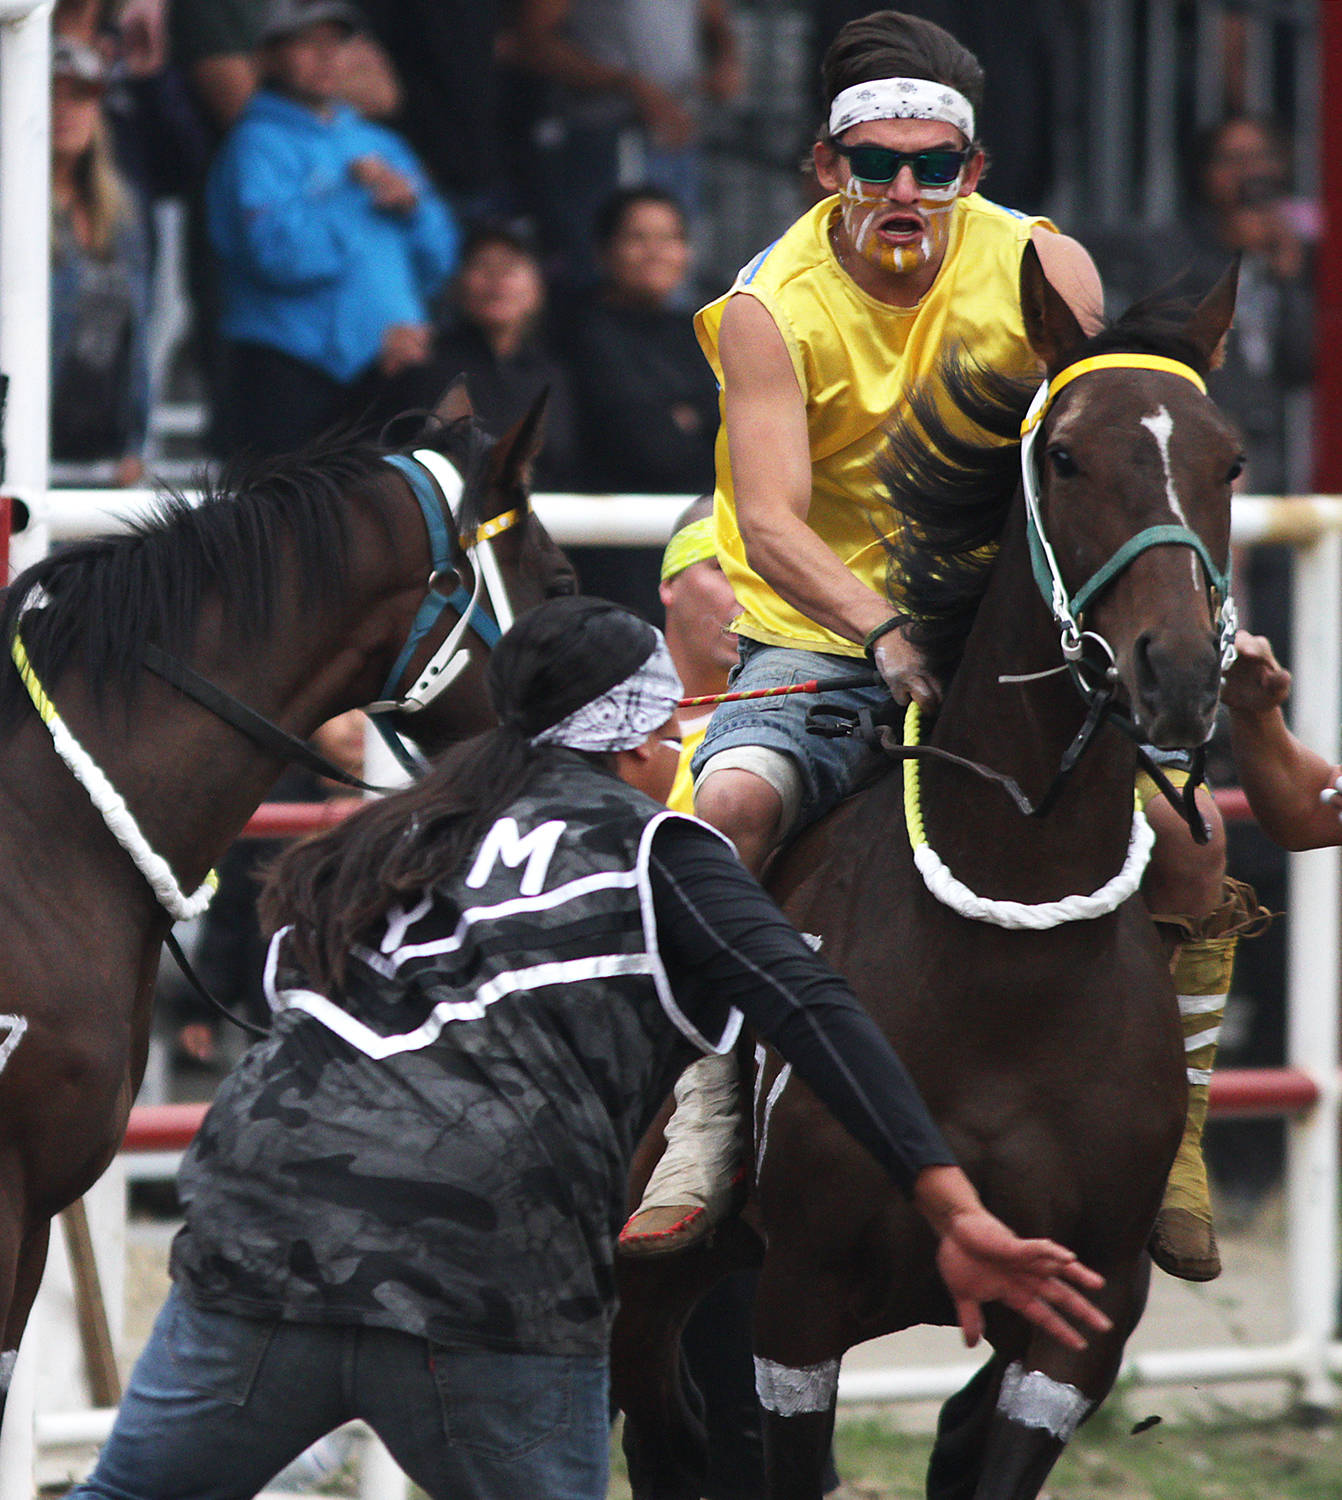 13288231_web1_180829-BAS-indian-horse-races_12